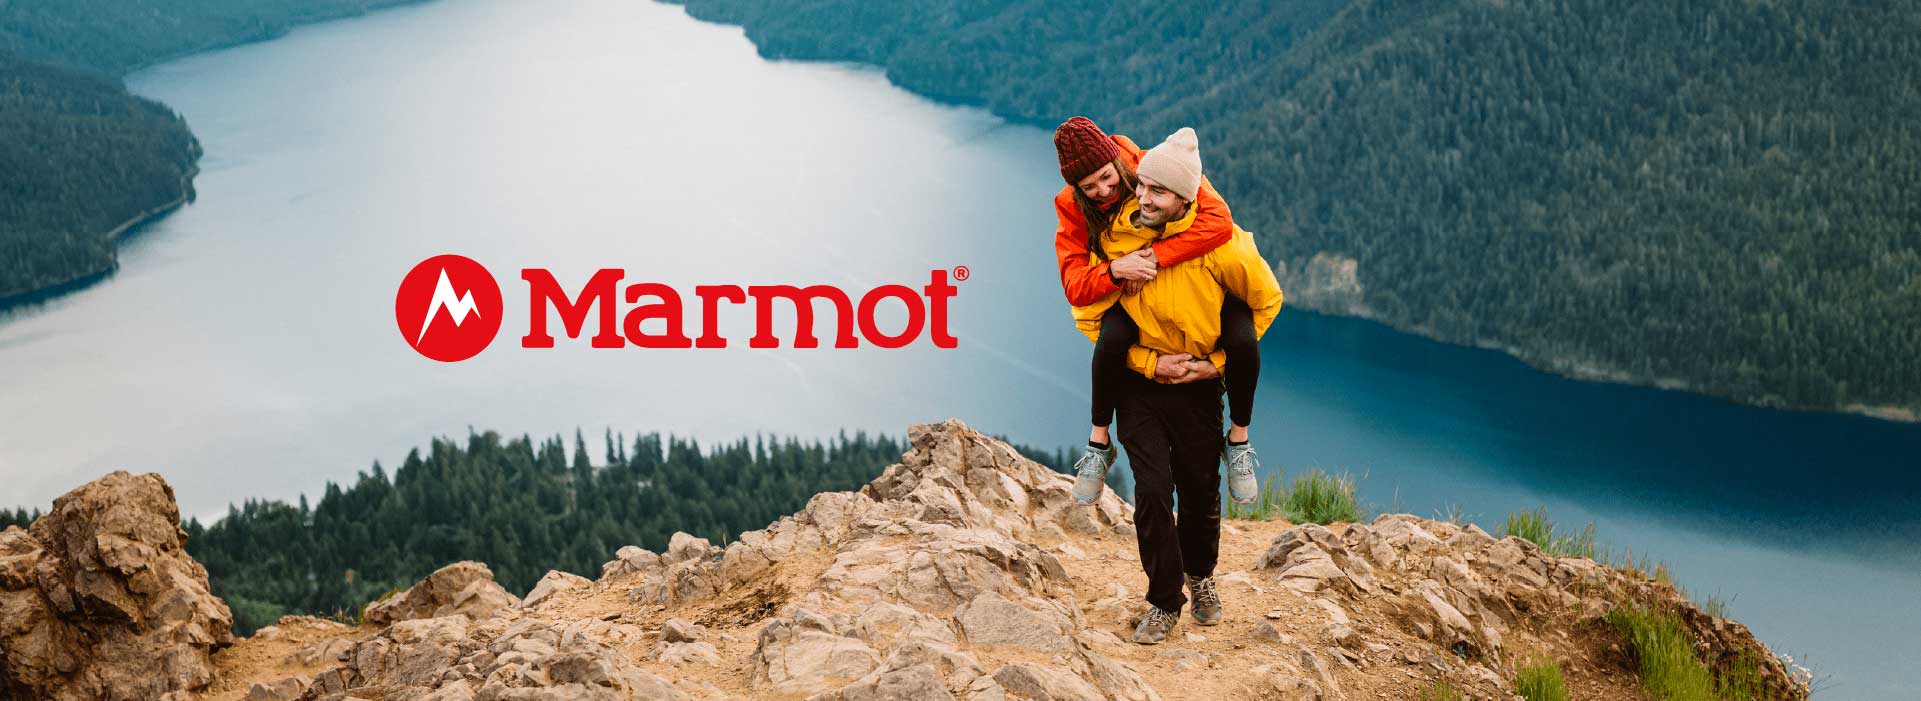 Marmot es una marca de origen norteamericano con más de 50 años de trayectoria. Se especializa en la producción de ropa técnica y equipo de montaña, siendo mundialmente reconocida por la calidad e innovación en productos como chaquetas y pantalones térmicos e impermeables, así como bolsas de dormir y carpas.